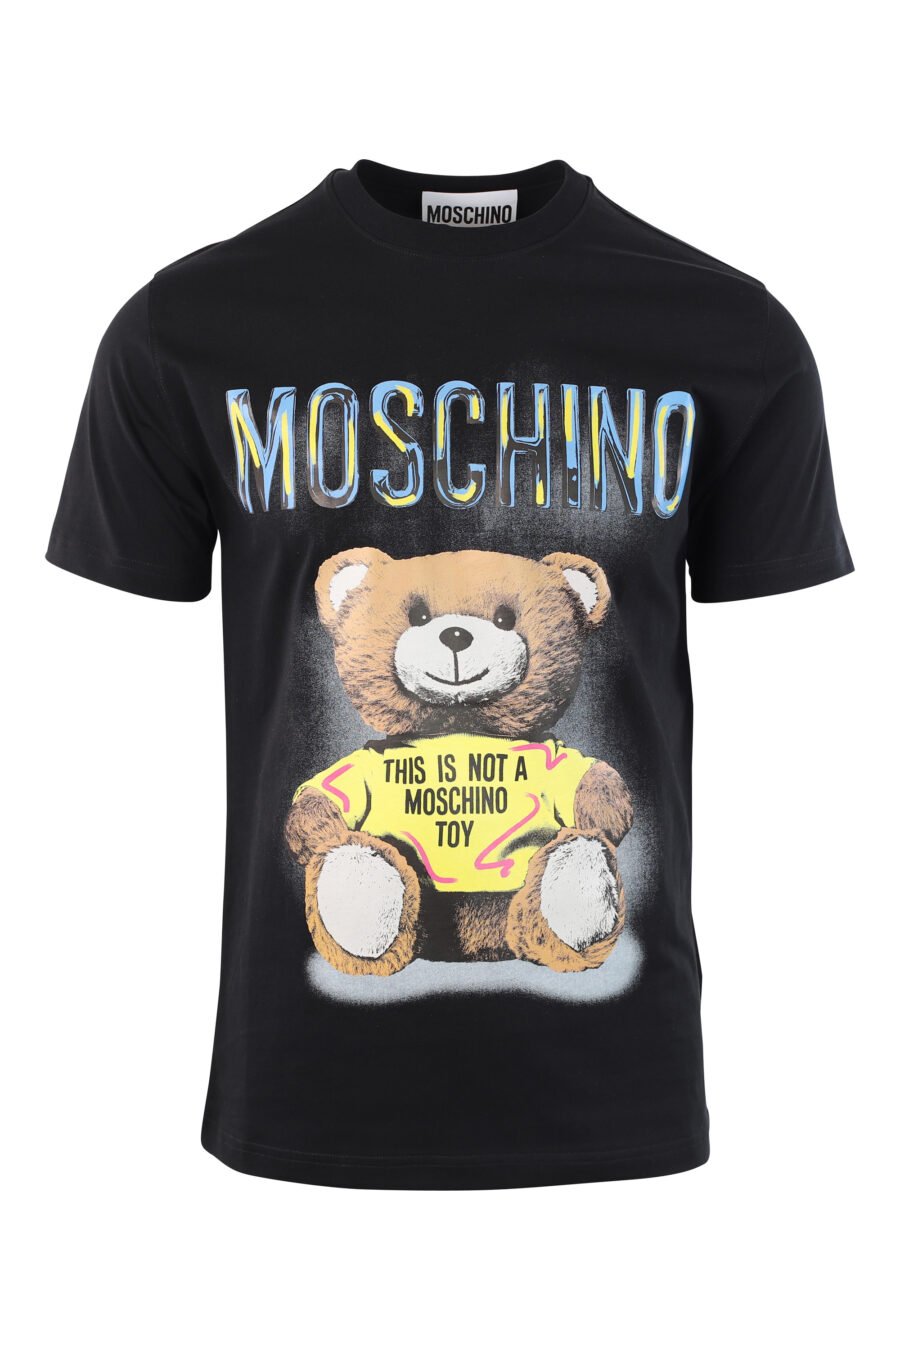 T-shirt noir avec ours maxilogo "ceci n'est pas un jouet moschino" - IMG 3787